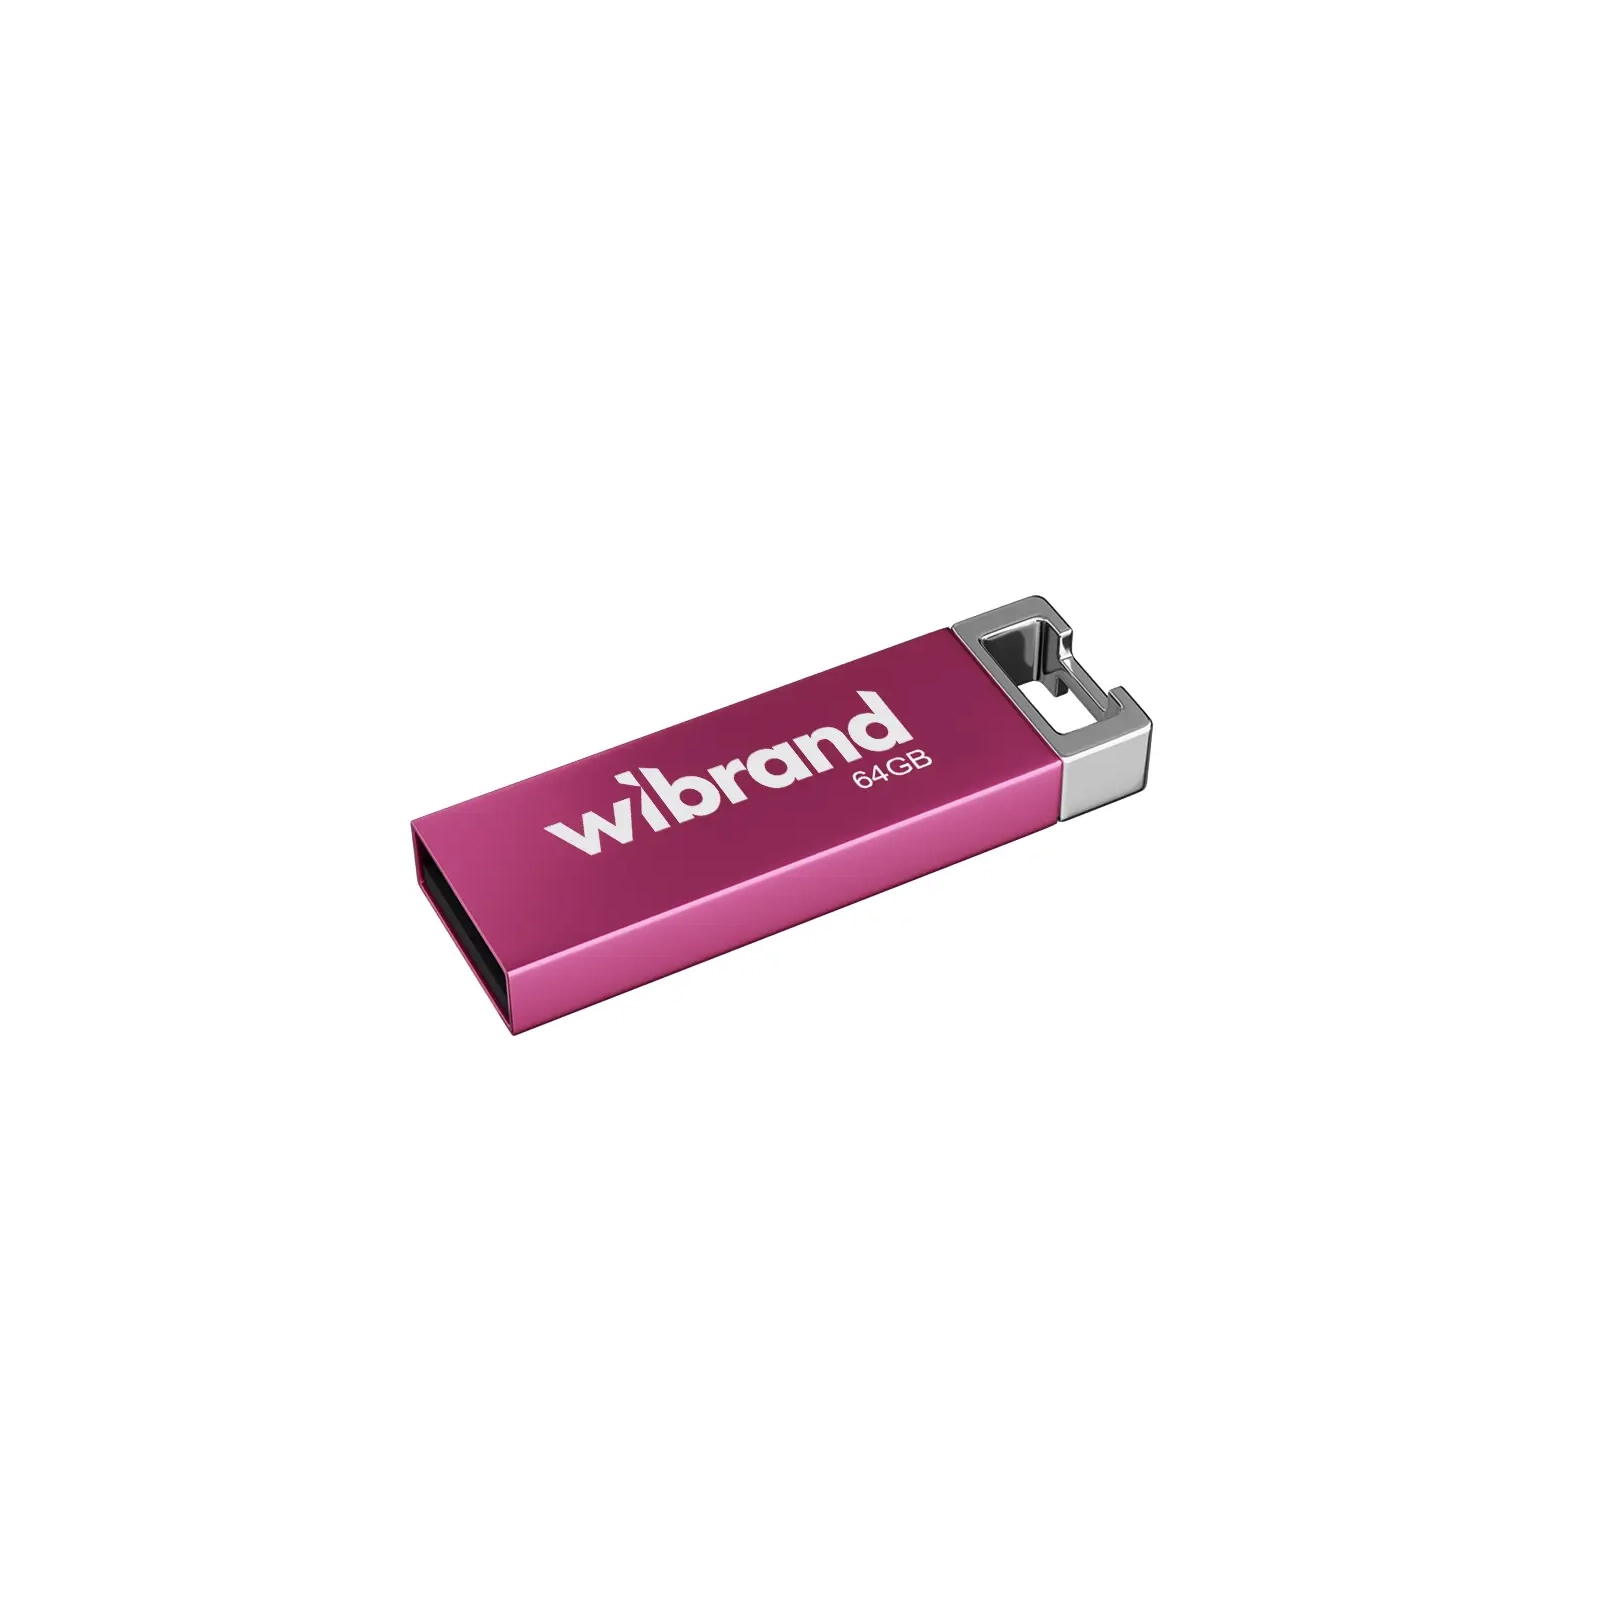 USB флеш накопитель Wibrand 16GB Chameleon Pink USB 2.0 (WI2.0/CH16U6P)